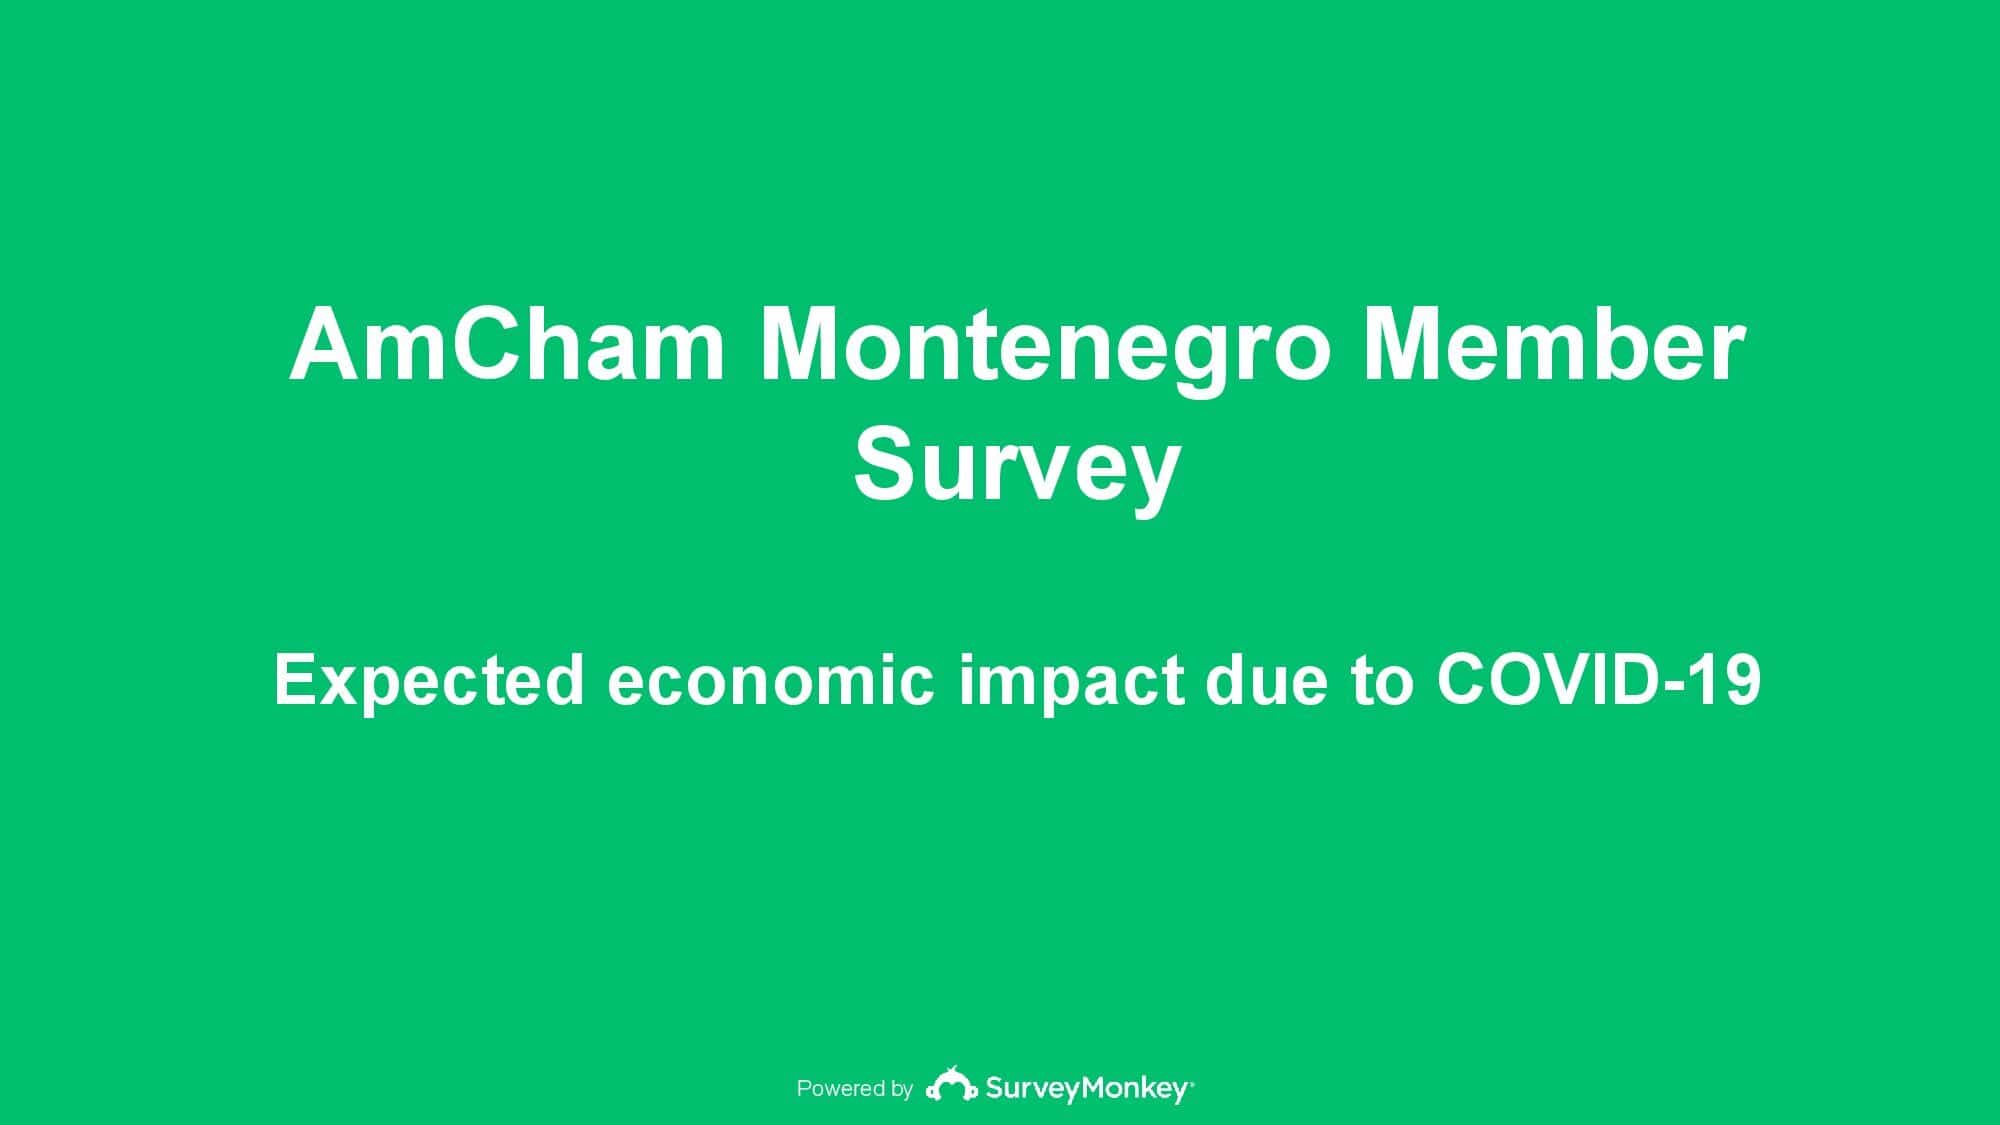 Gotovo 80% članica AmCham-a očekuje pad prihoda u 2020. zbog pandemije virusa COVID 19